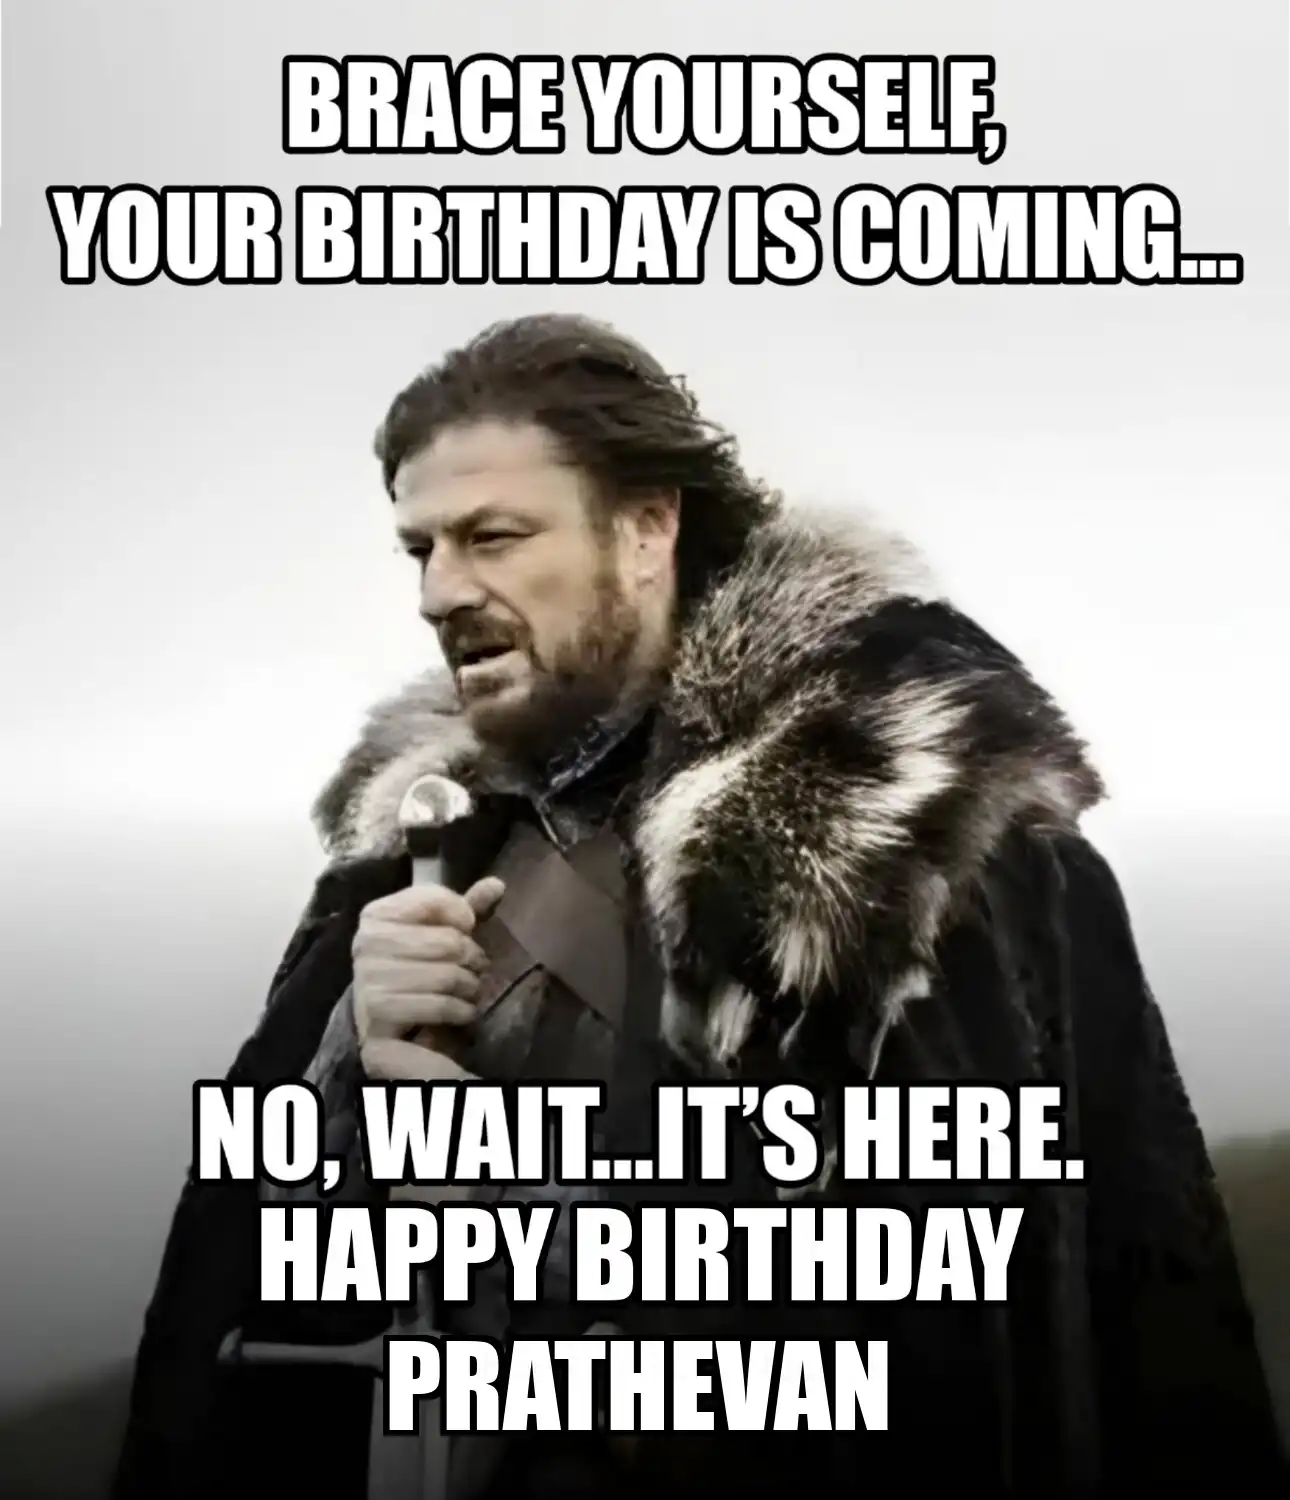 Happy Birthday Prathevan Brace Yourself Your Birthday Is Coming Meme